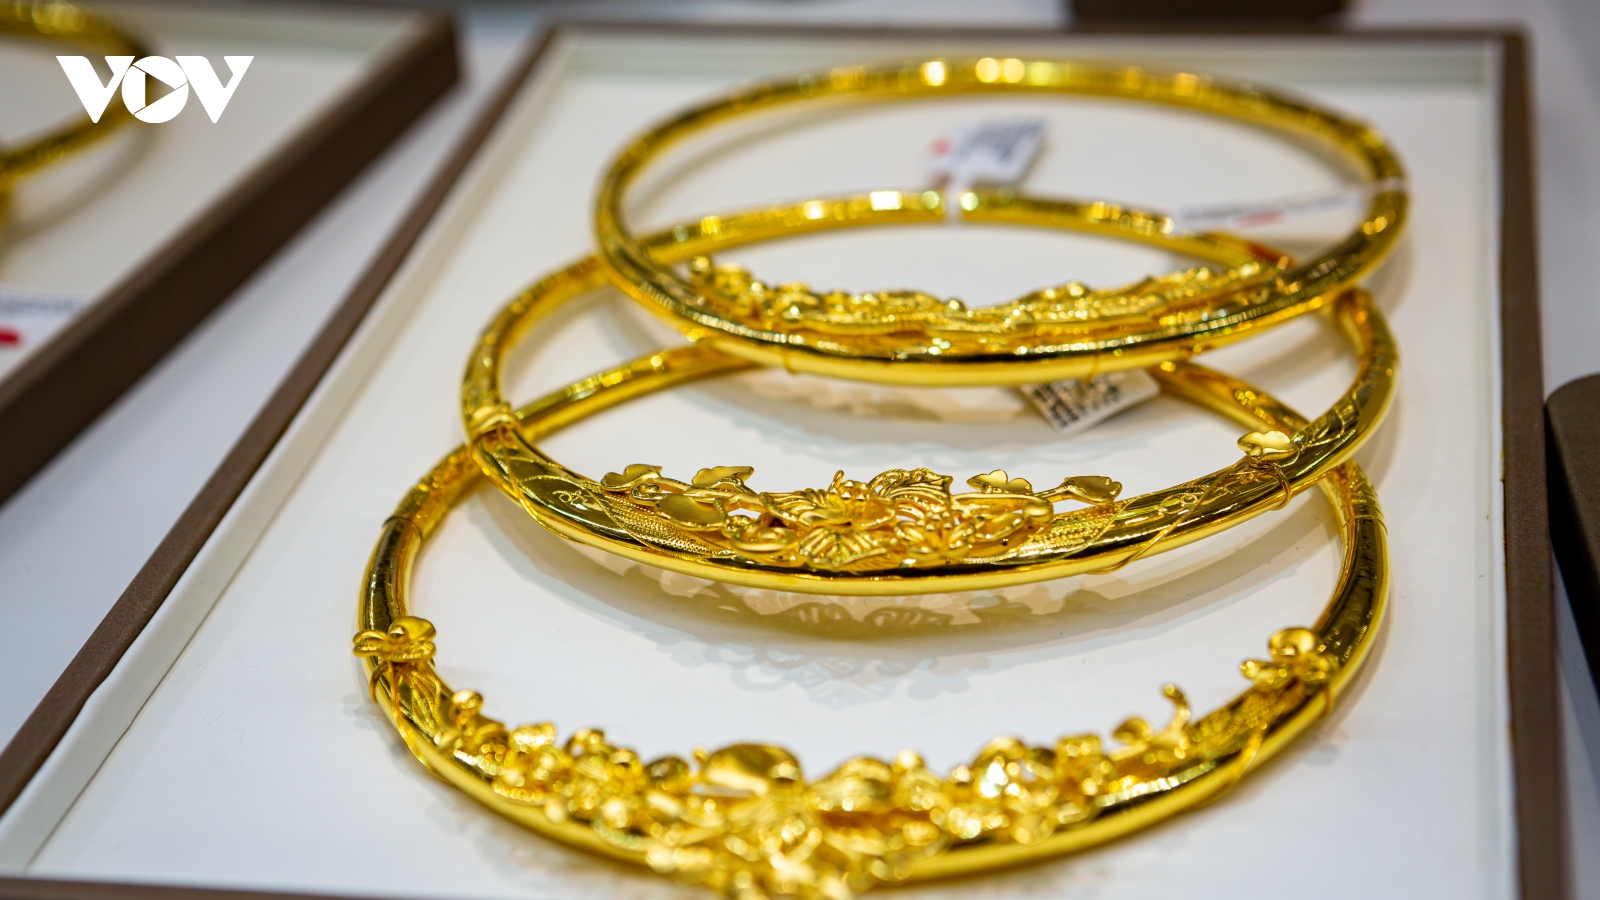 Giá vàng hôm nay 25/10: Vàng trong nước đứng giá ở mức 70,6 triệu đồng/lượng